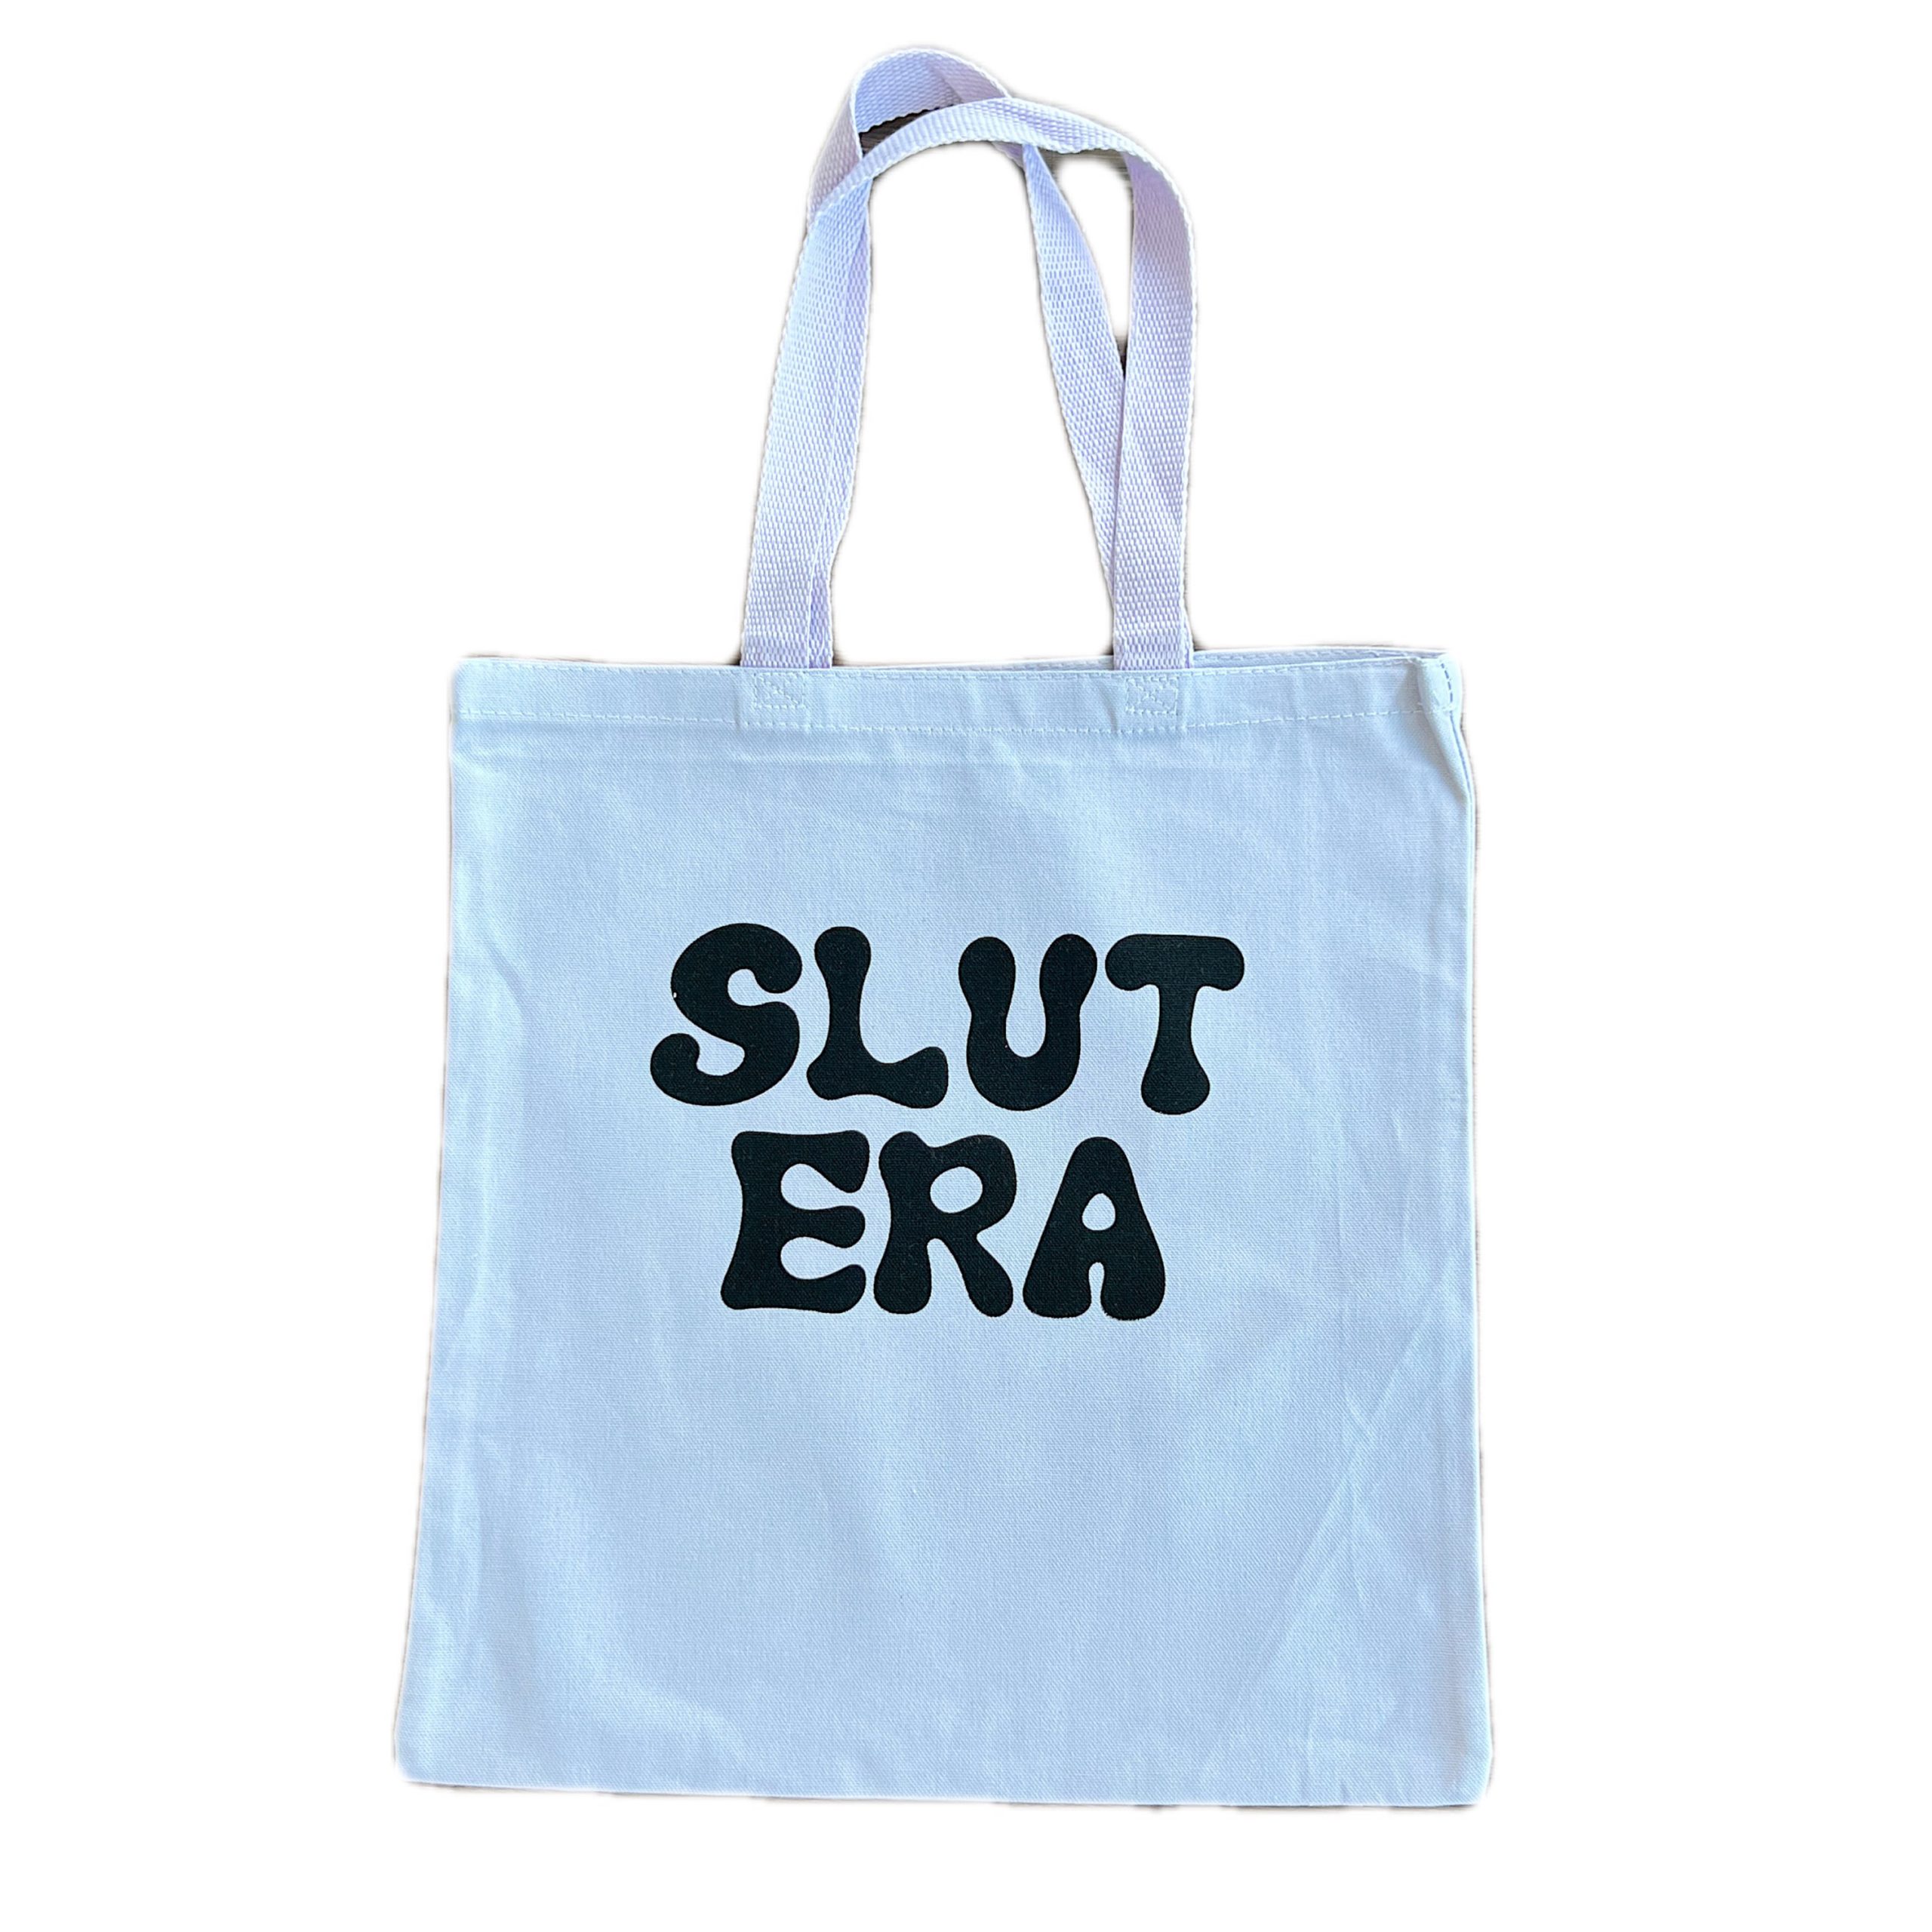 Y2K Trendy Tote Bag with Slut Era Design